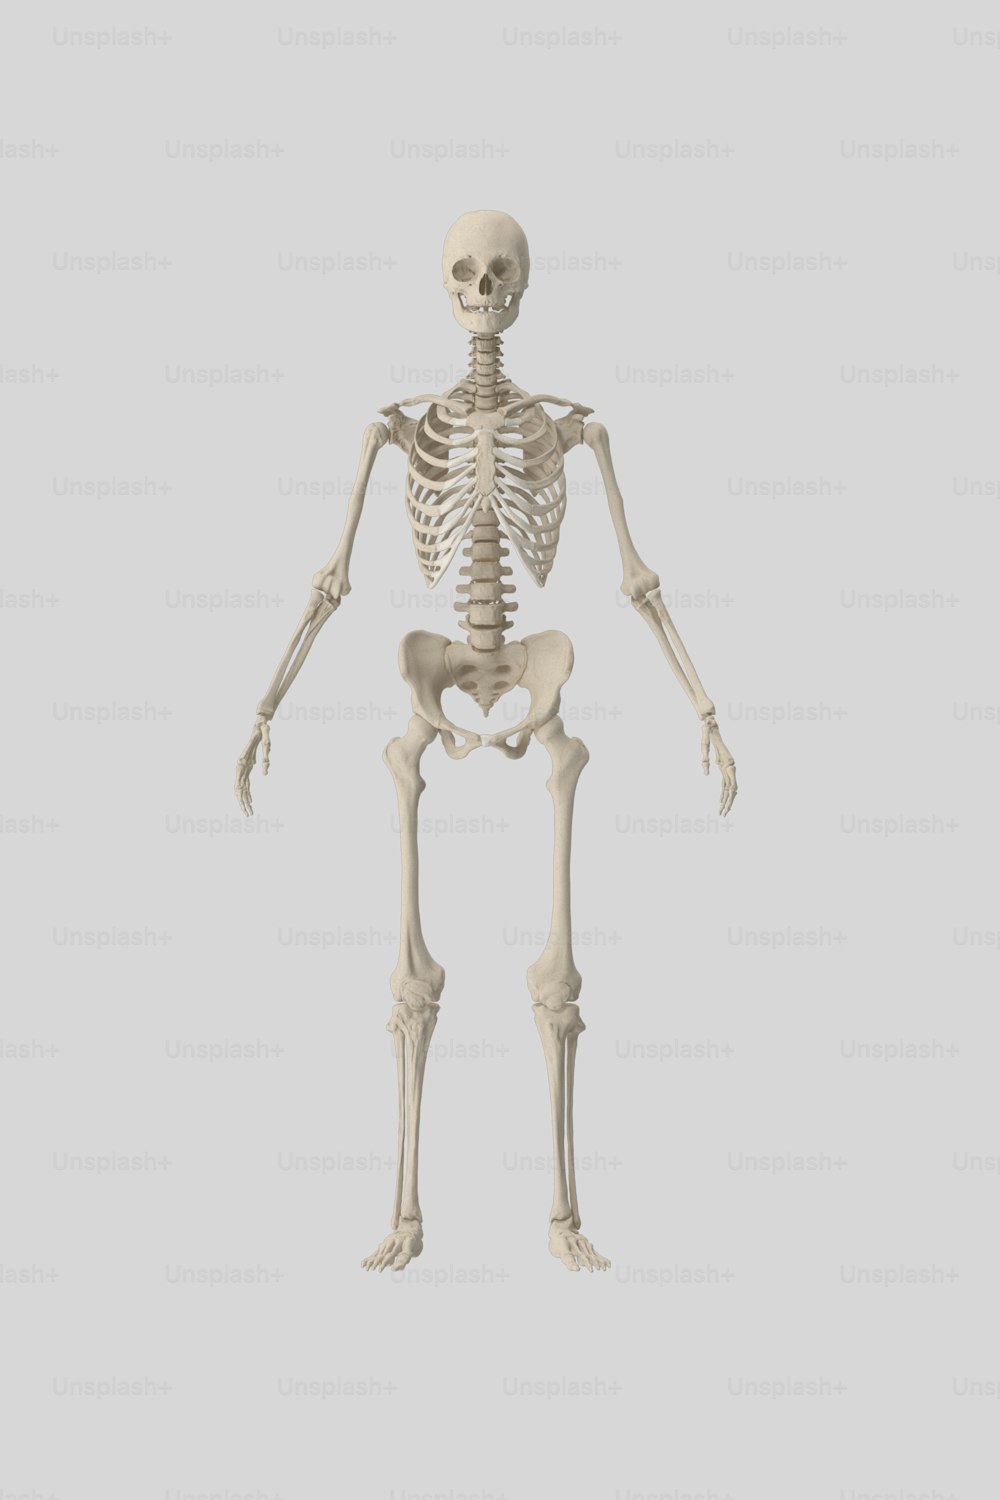 Un esqueleto humano se muestra en esta imagen